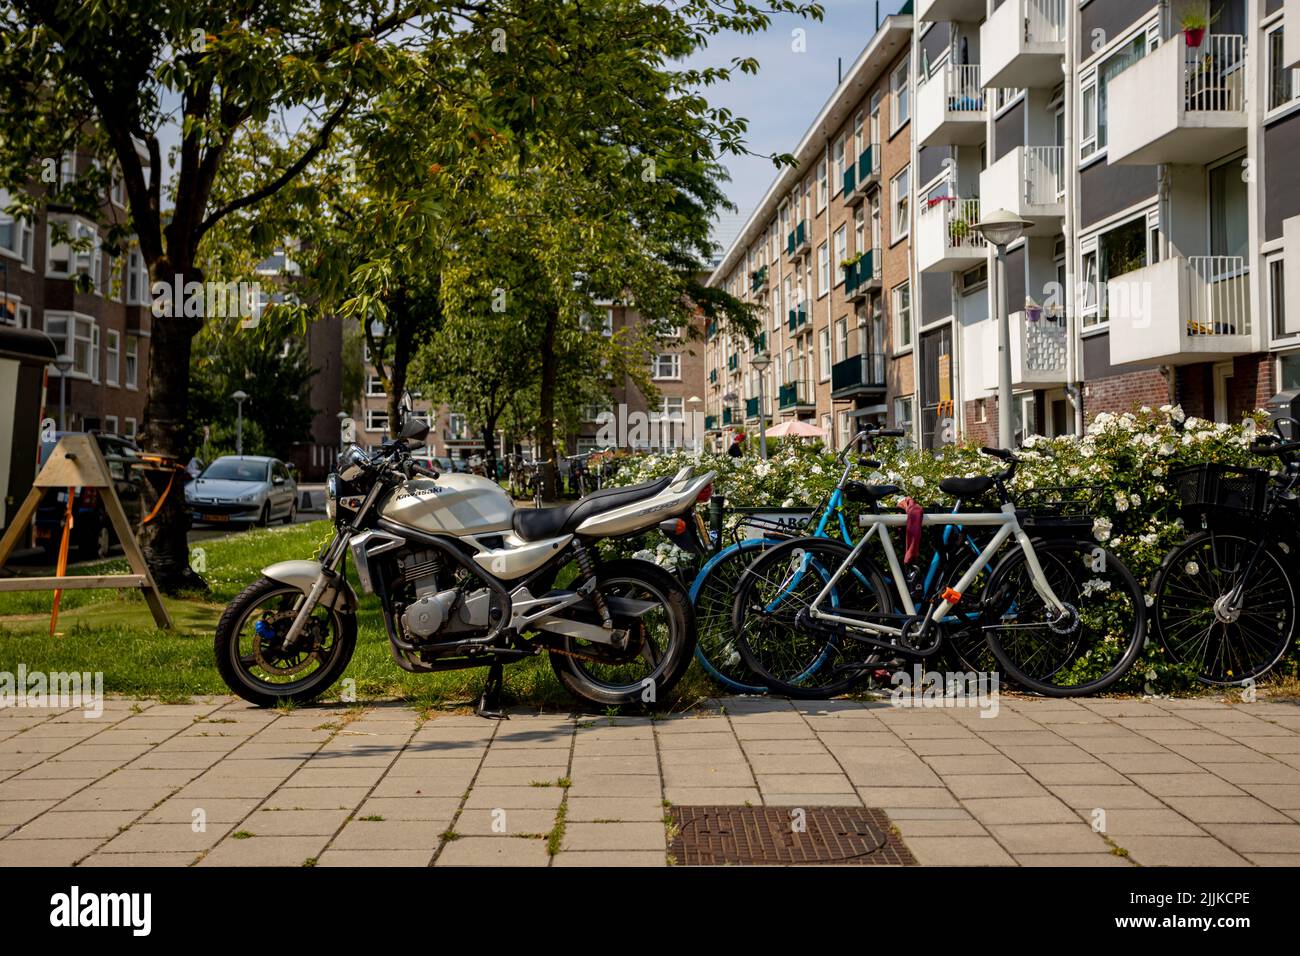 Case residenziali di tipo olandese del secolo scorso con biciclette parcheggiate di fronte Foto Stock